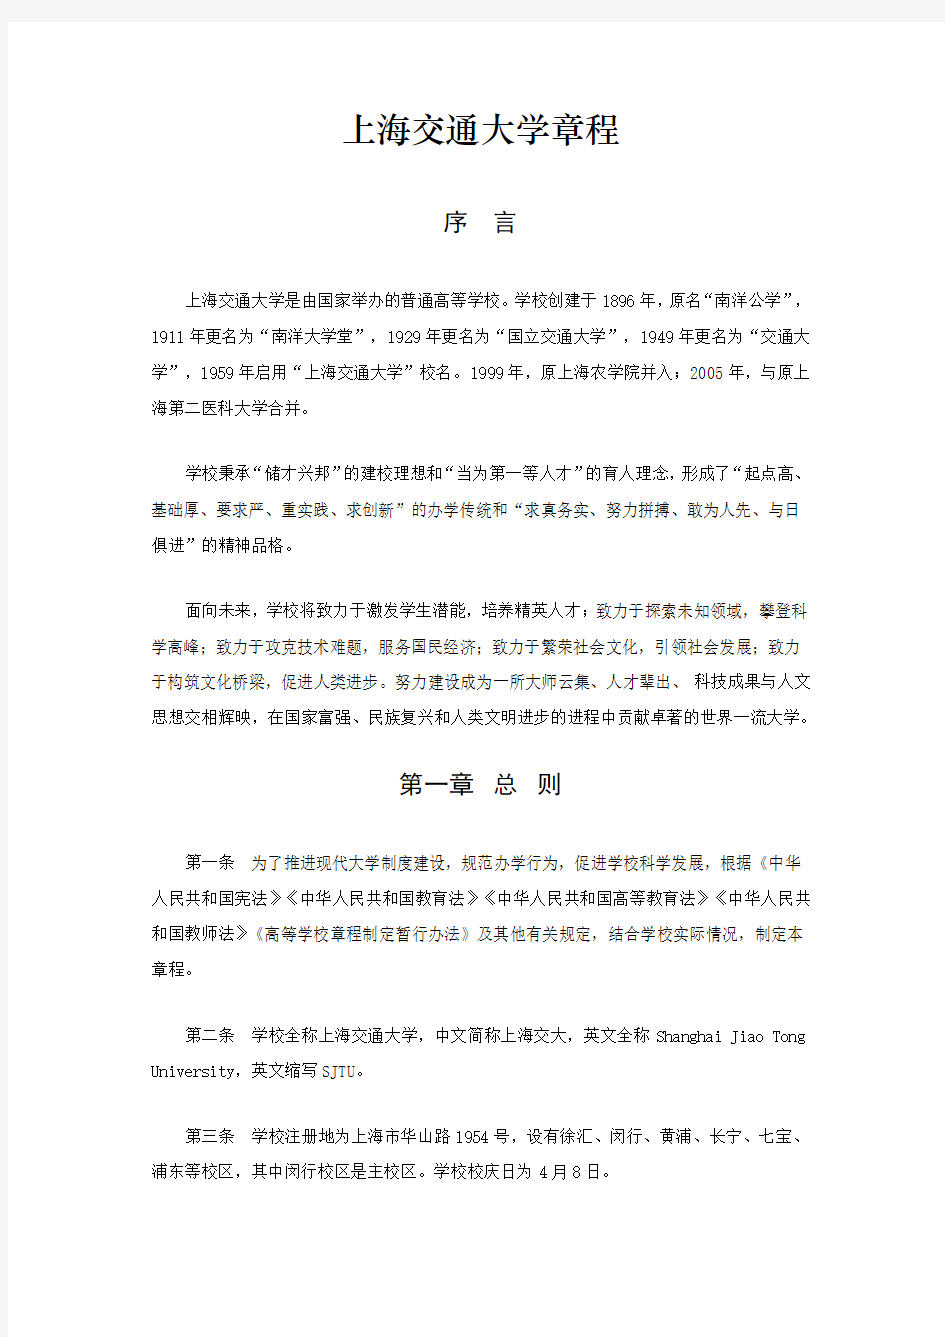 上海交通大学章程